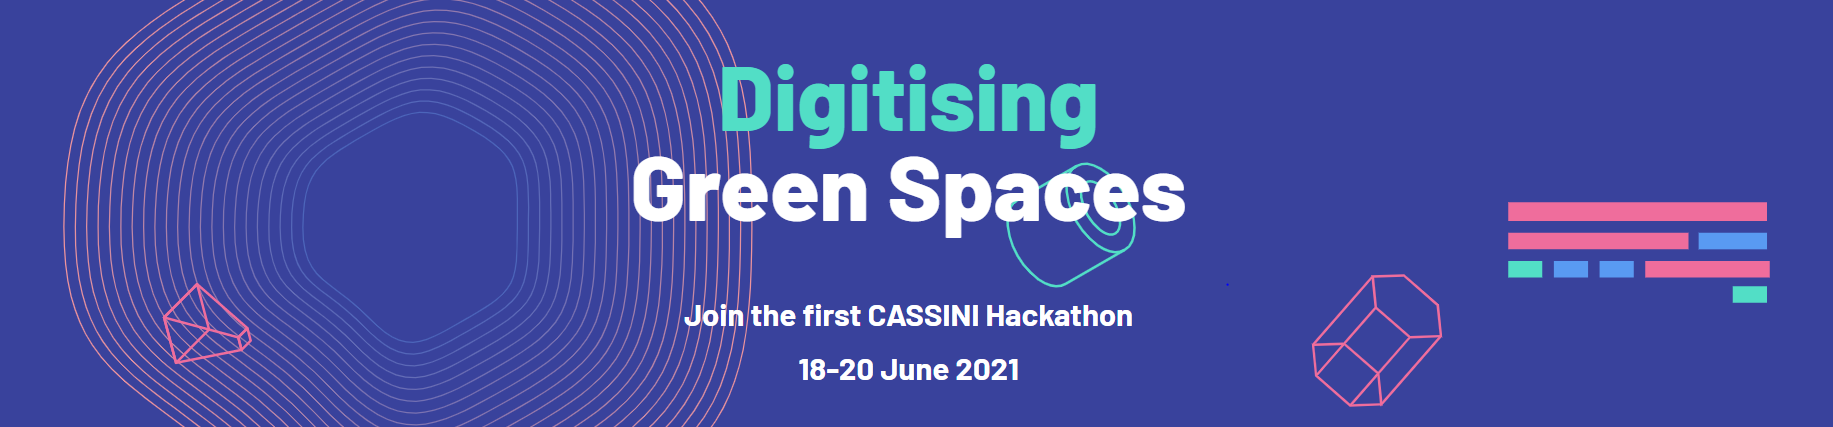 Vabilo govorcem za sodelovanje na hackathonu iniciative CASSINI Space Entrepreneurship